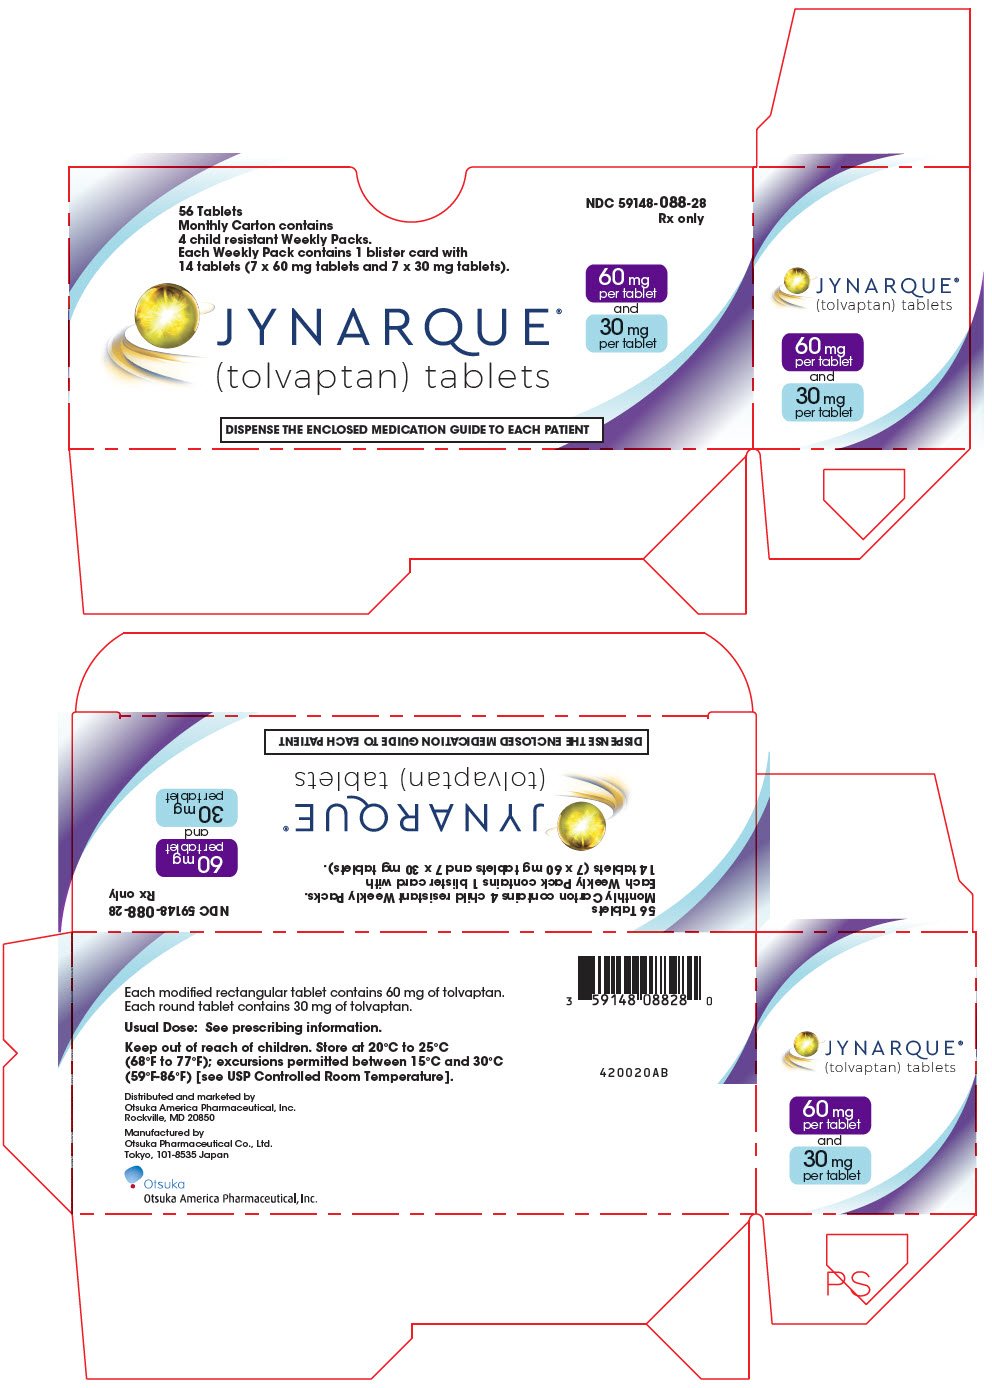 PRINCIPAL DISPLAY PANEL - Kit Carton - 60 mg and 30 mg